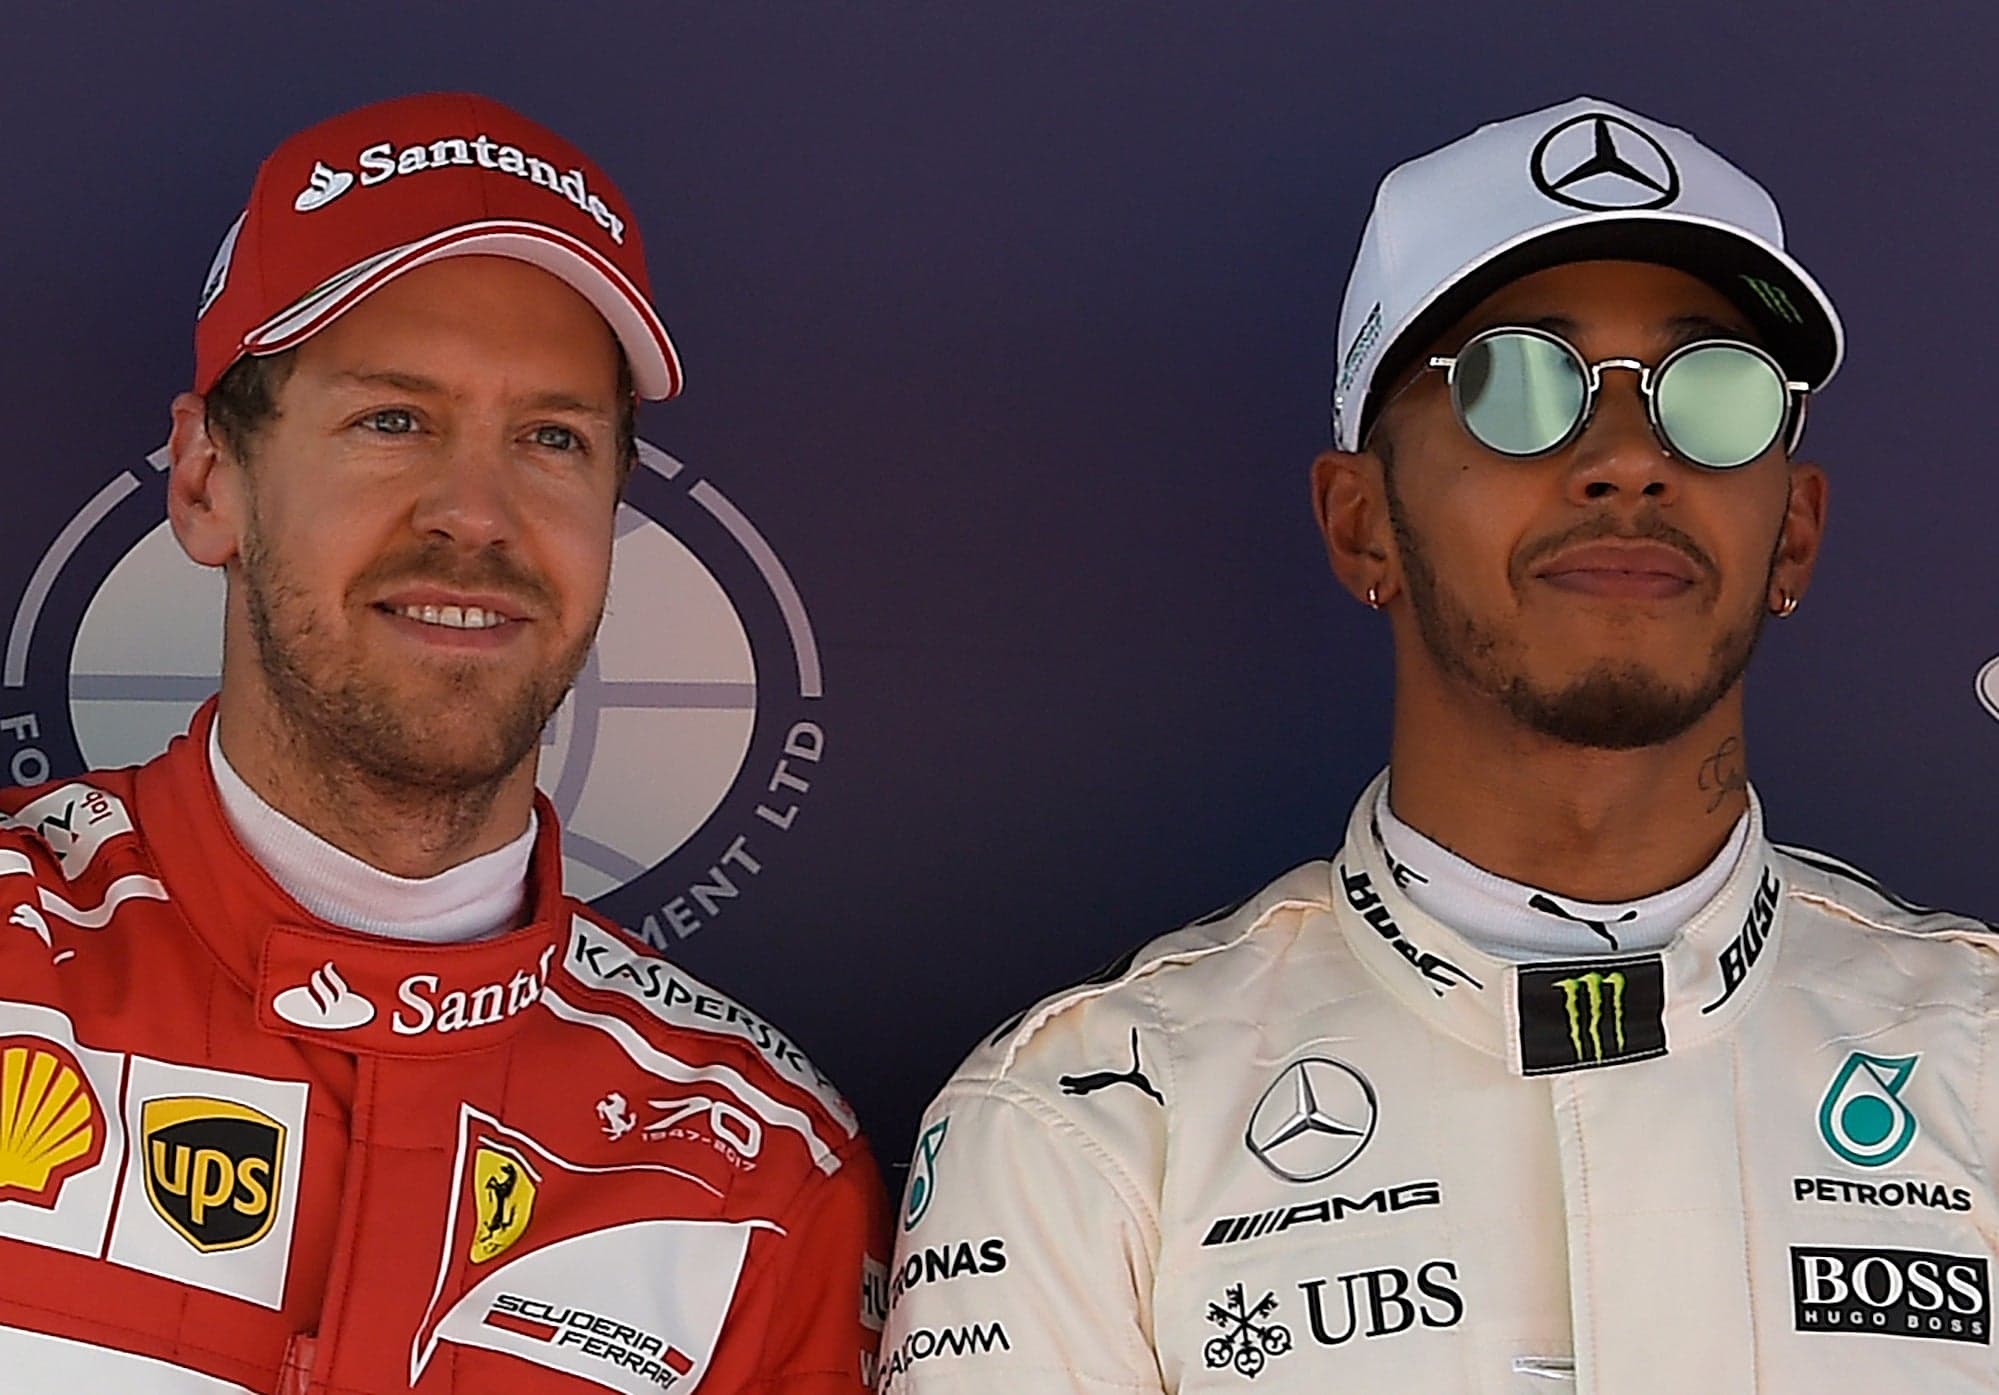 Sebastian Vettel in his Ferrari era, alongside Lewis Hamilton